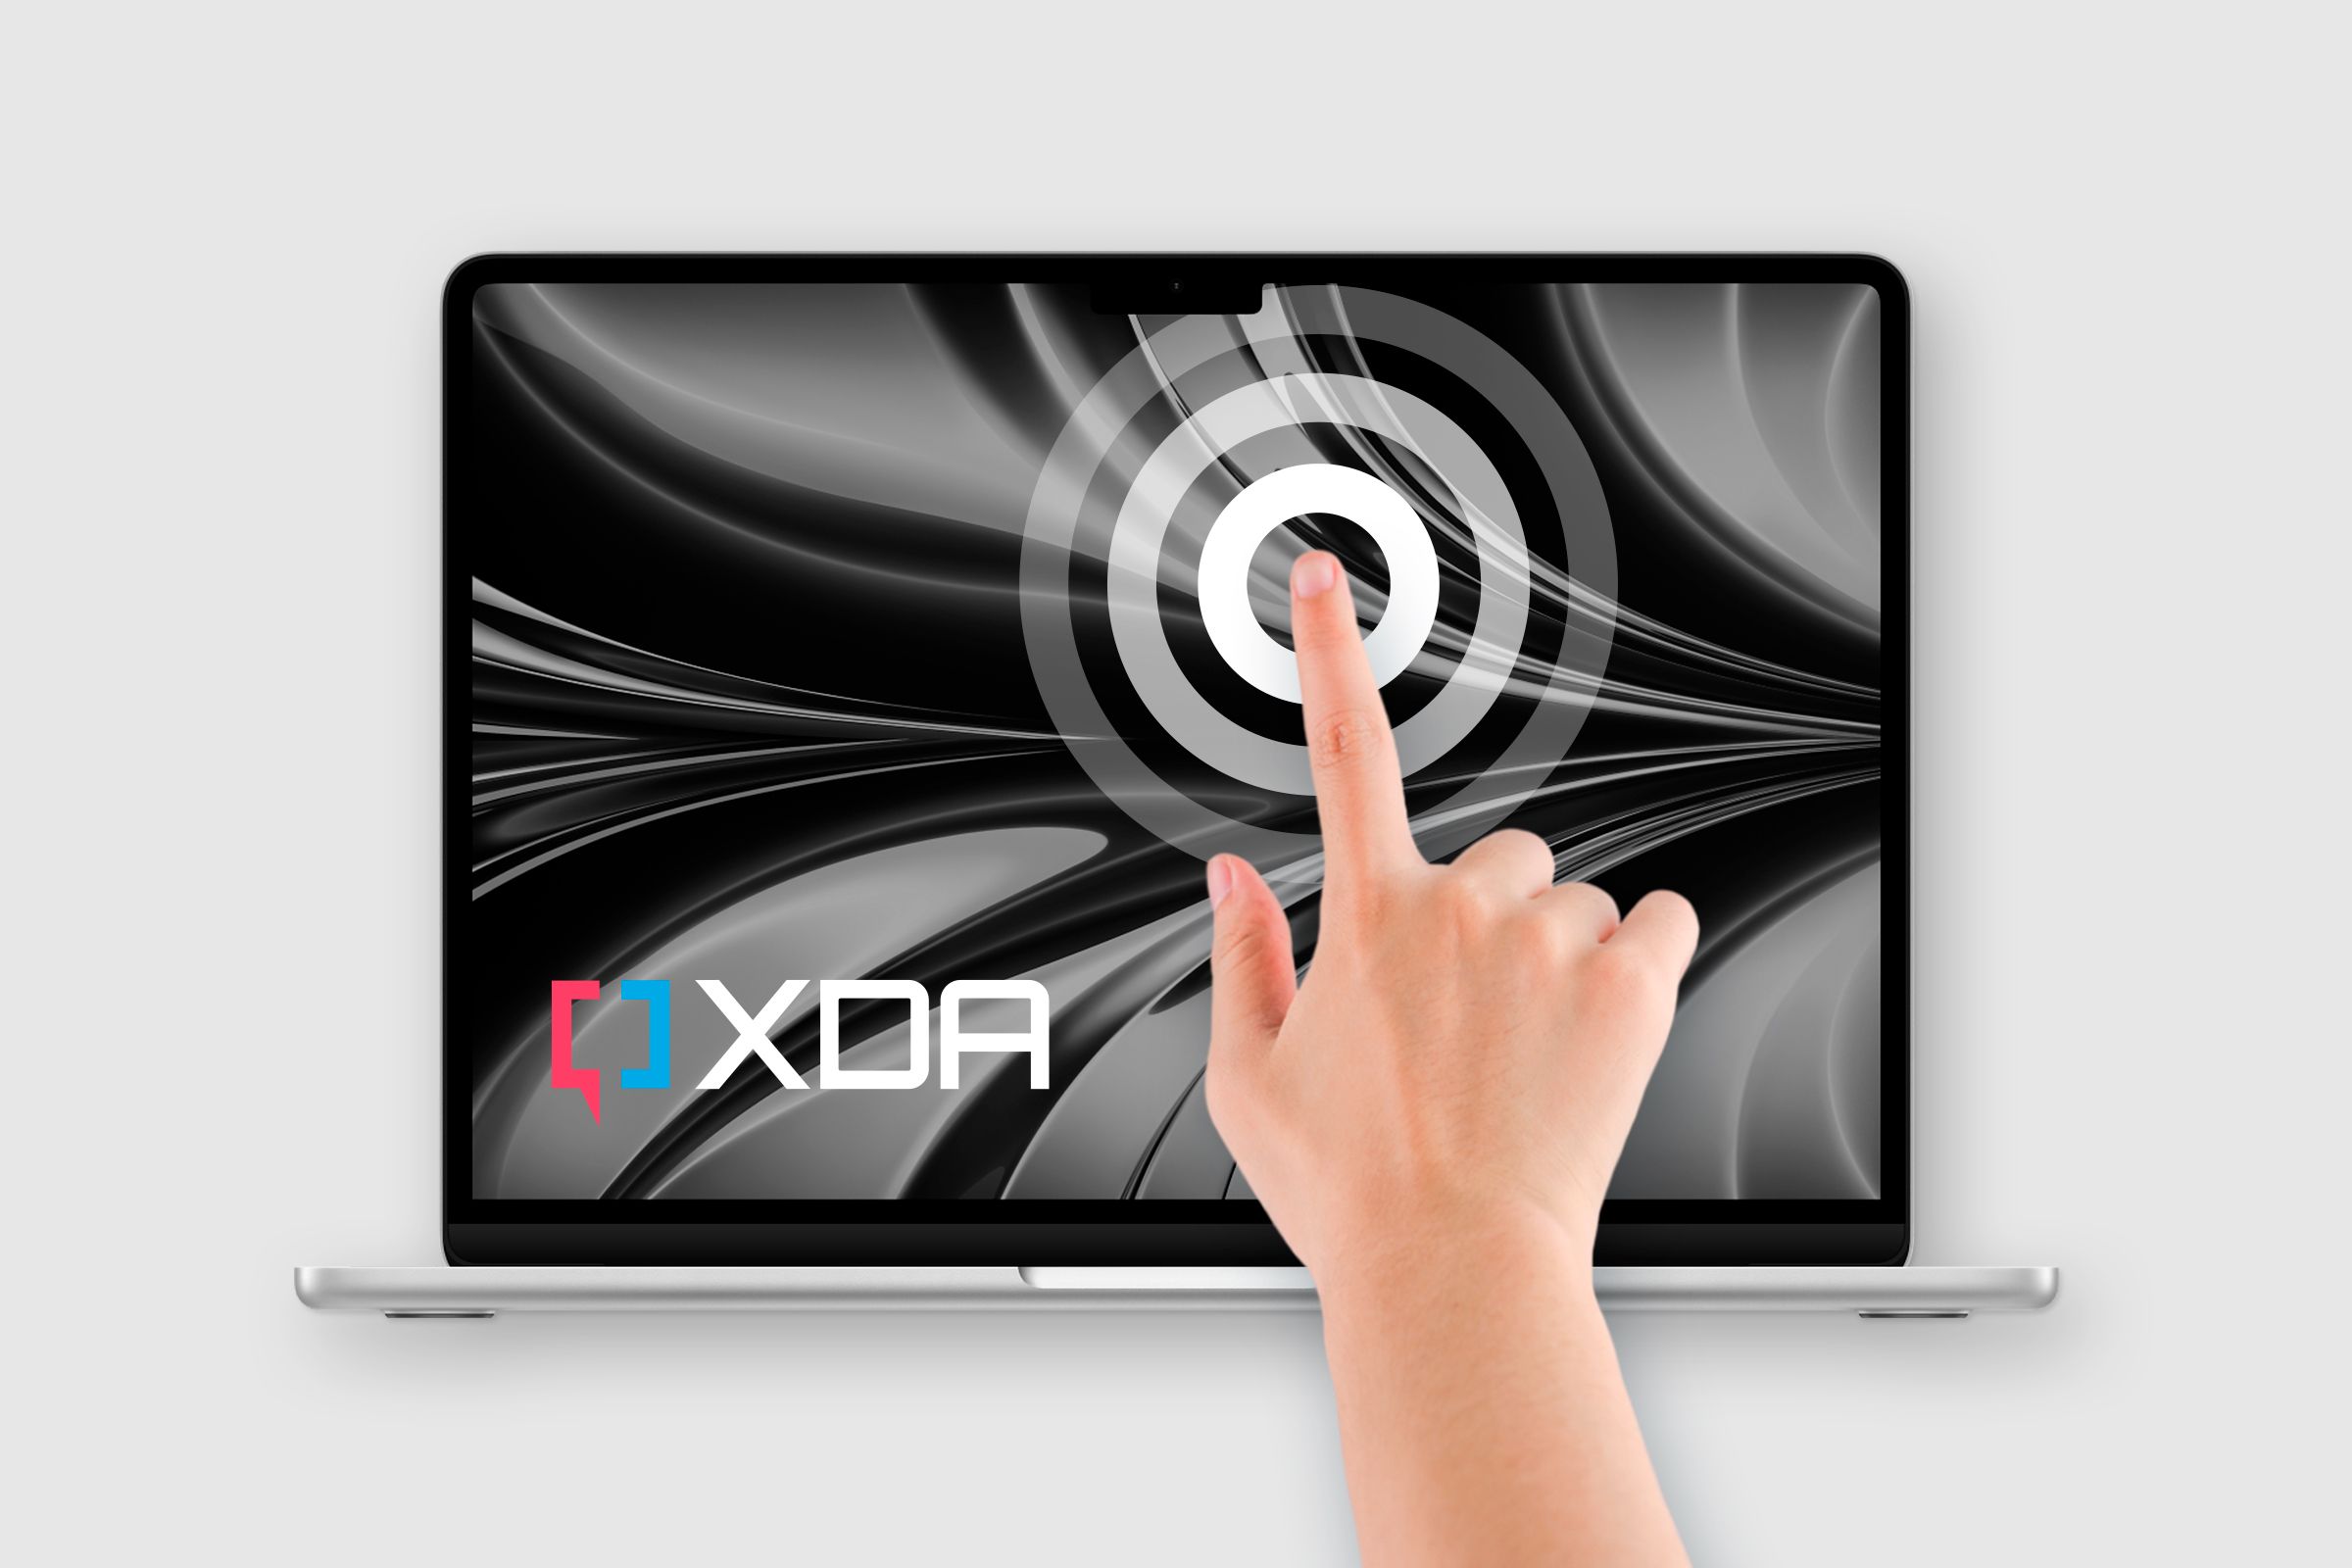 hand touching the Touchscreen MacBook featuring XDA logo onscreen